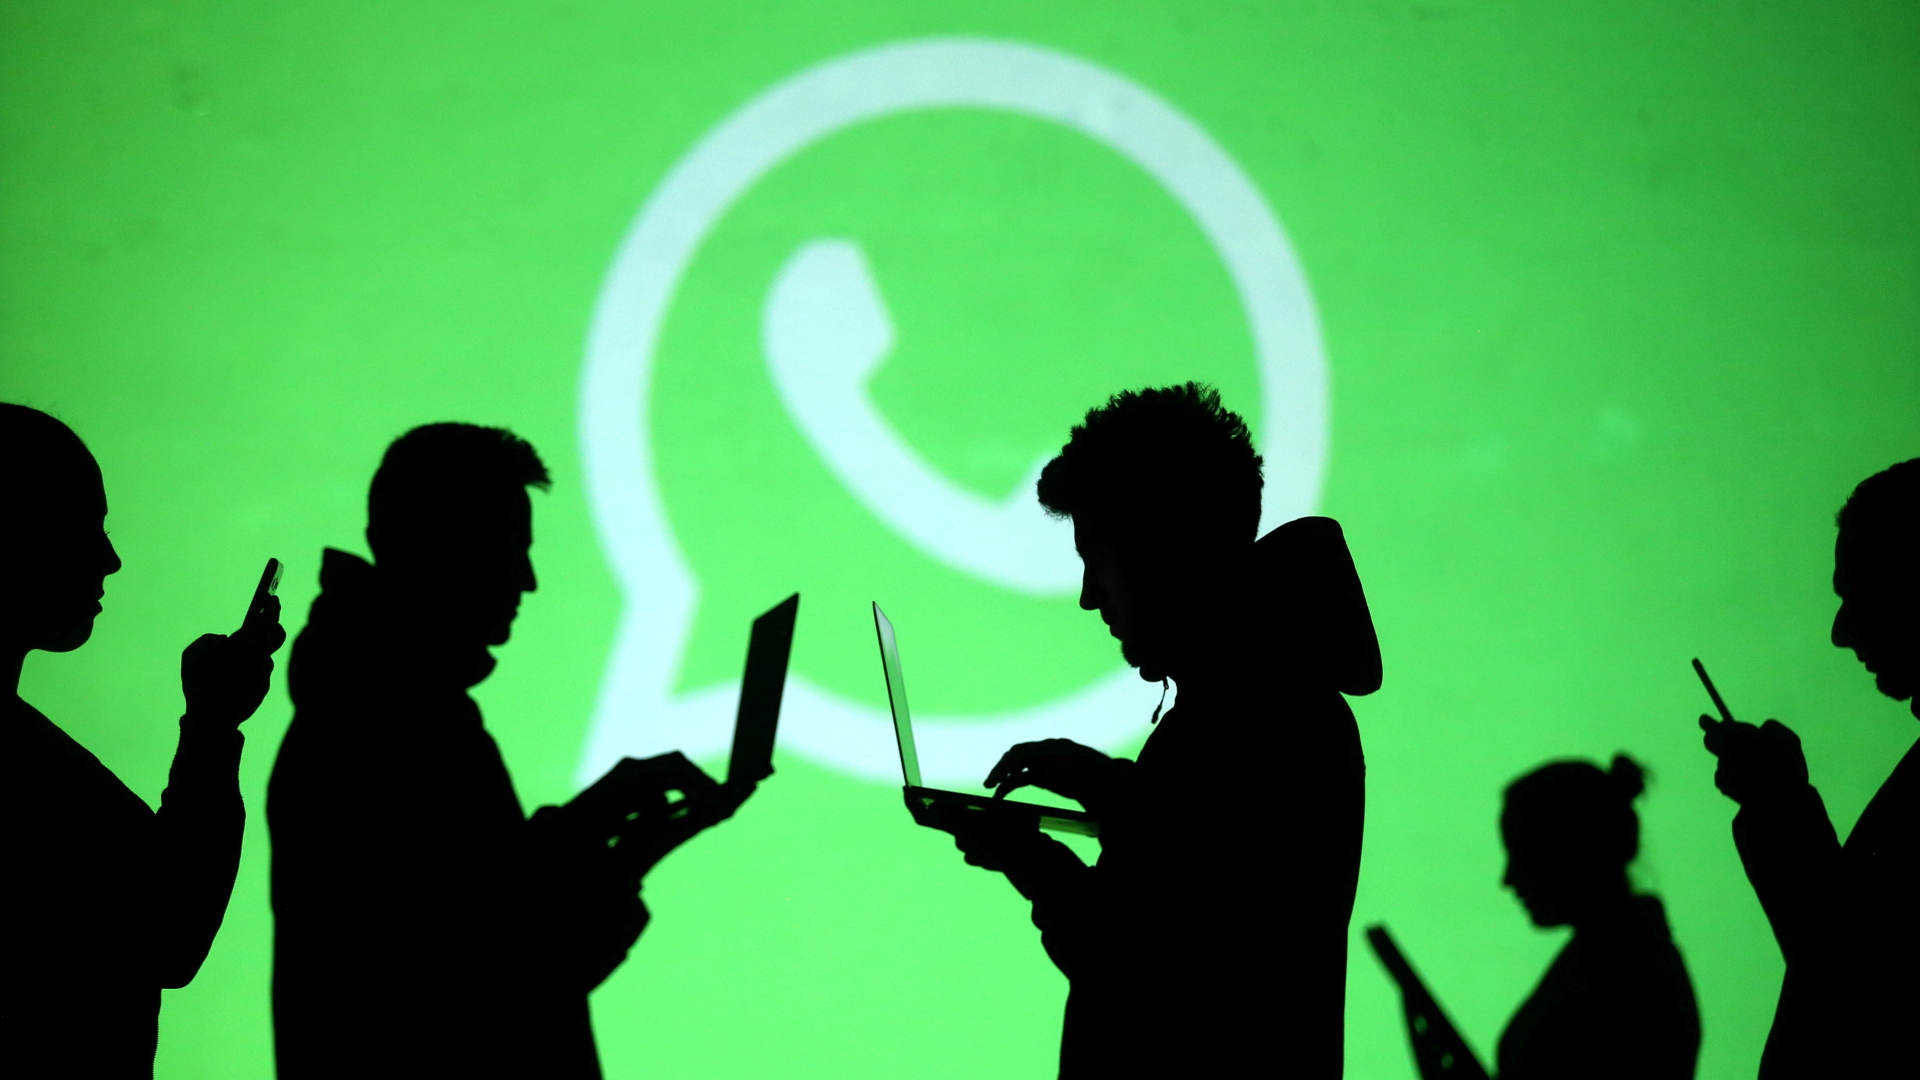 Silhouetten von Menschen mit Laptops und Smartphones in der Hand, im Hintergrund ein großes Whatsapp-Logo (Weißer Kreis mit Telefon-Symbol in der Mitte) | REUTERS